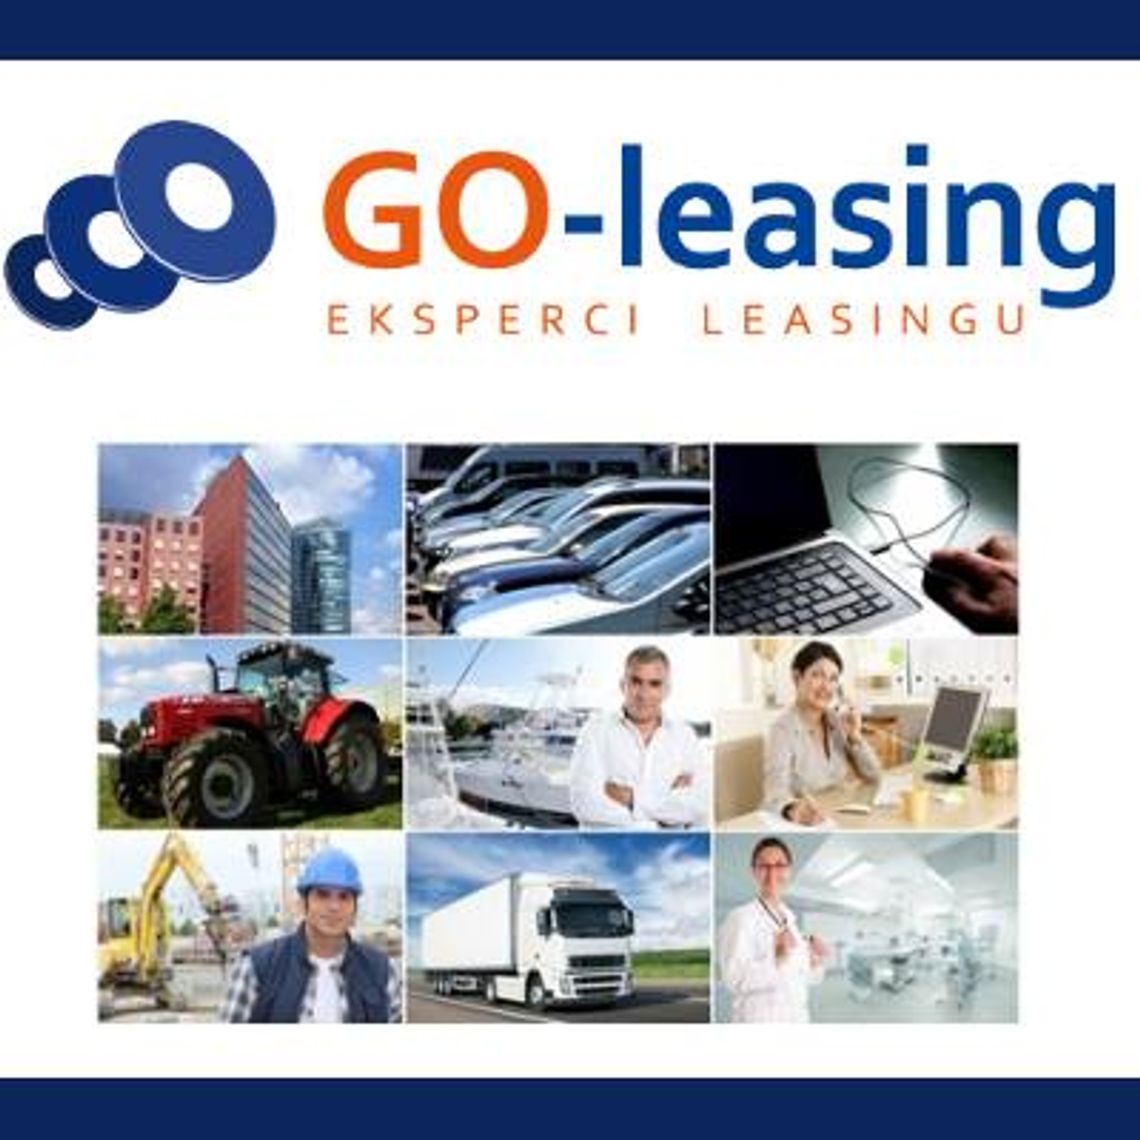 GO-leasing 